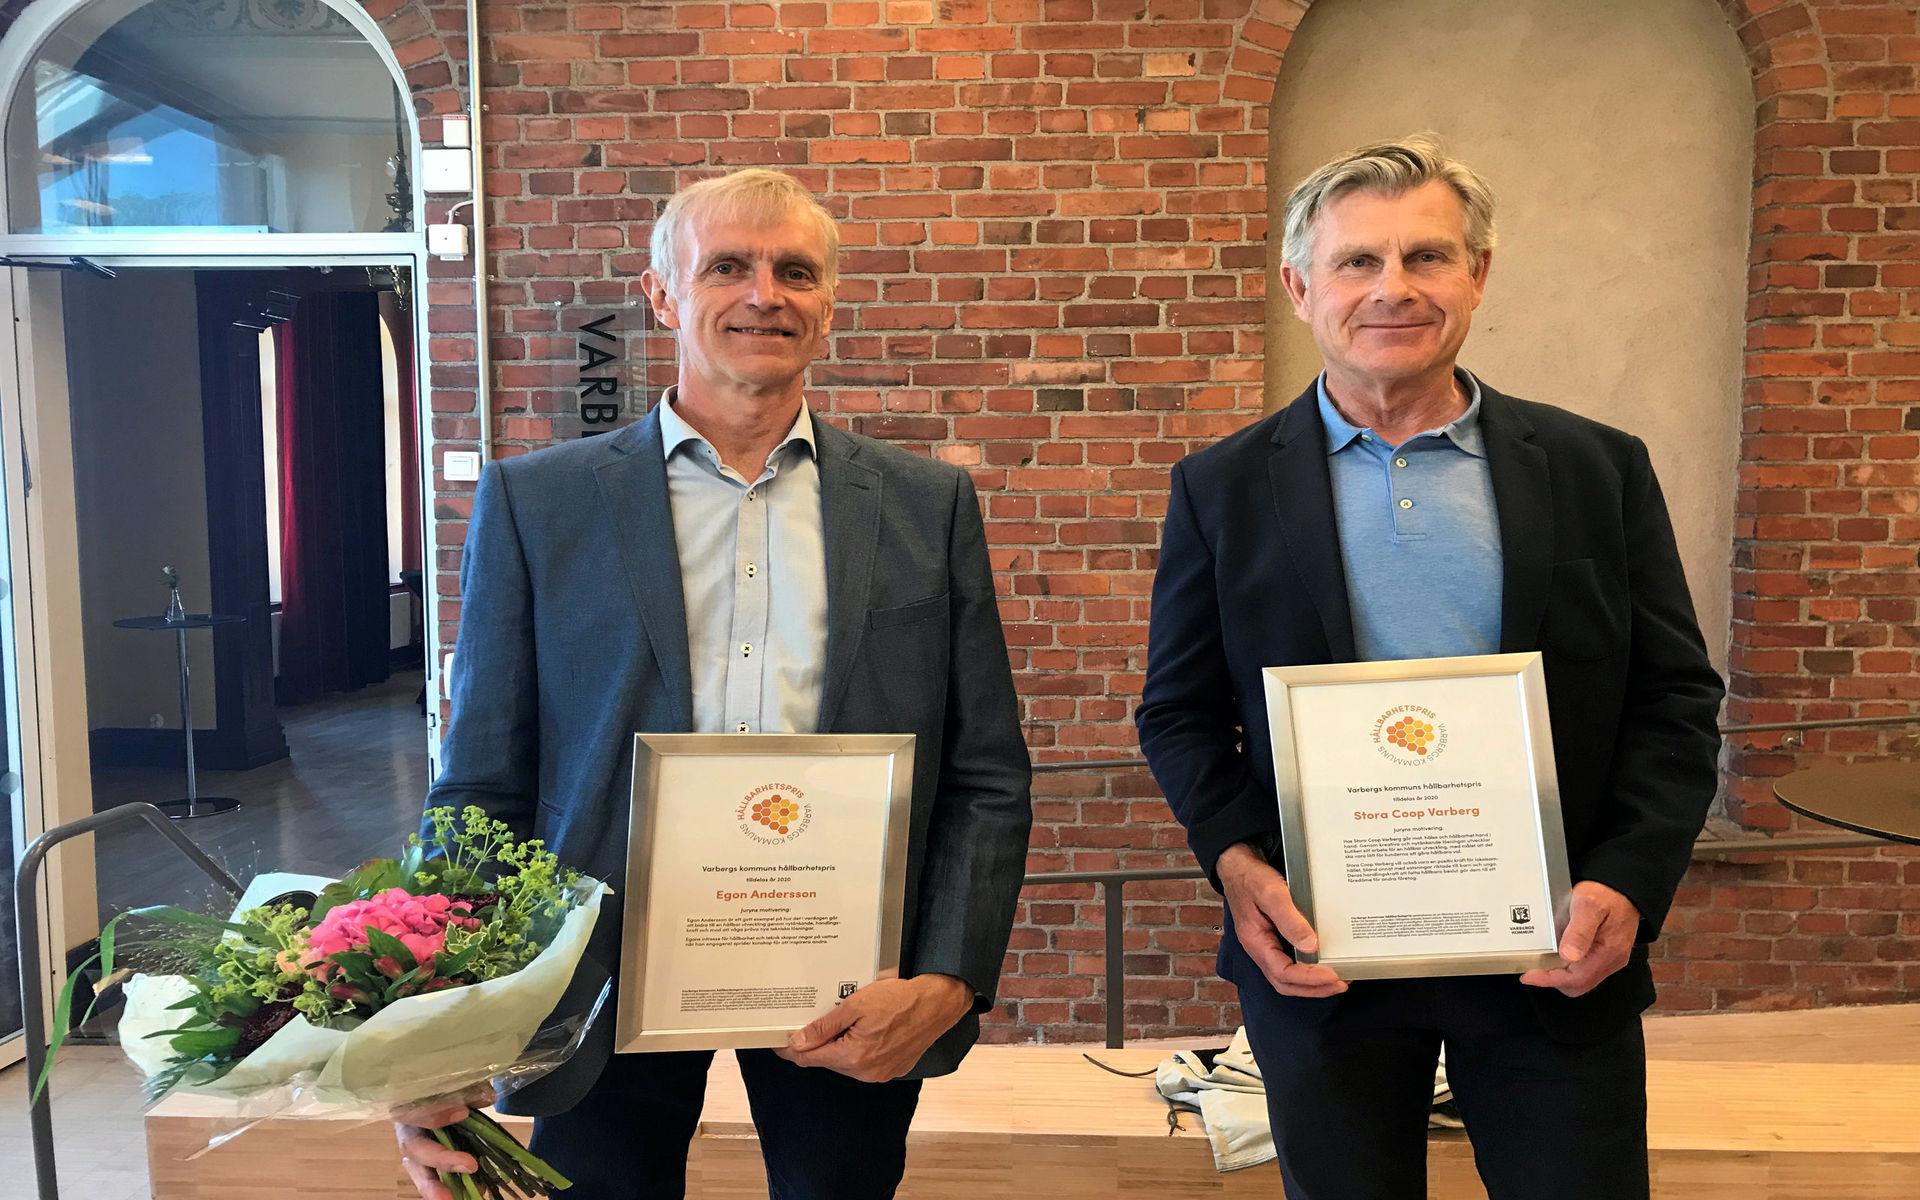 Kommunens hållbarhetspris delades ut till solcellsentusiastiske Egon Andersson (till vänster) och Stora Coop Varberg.